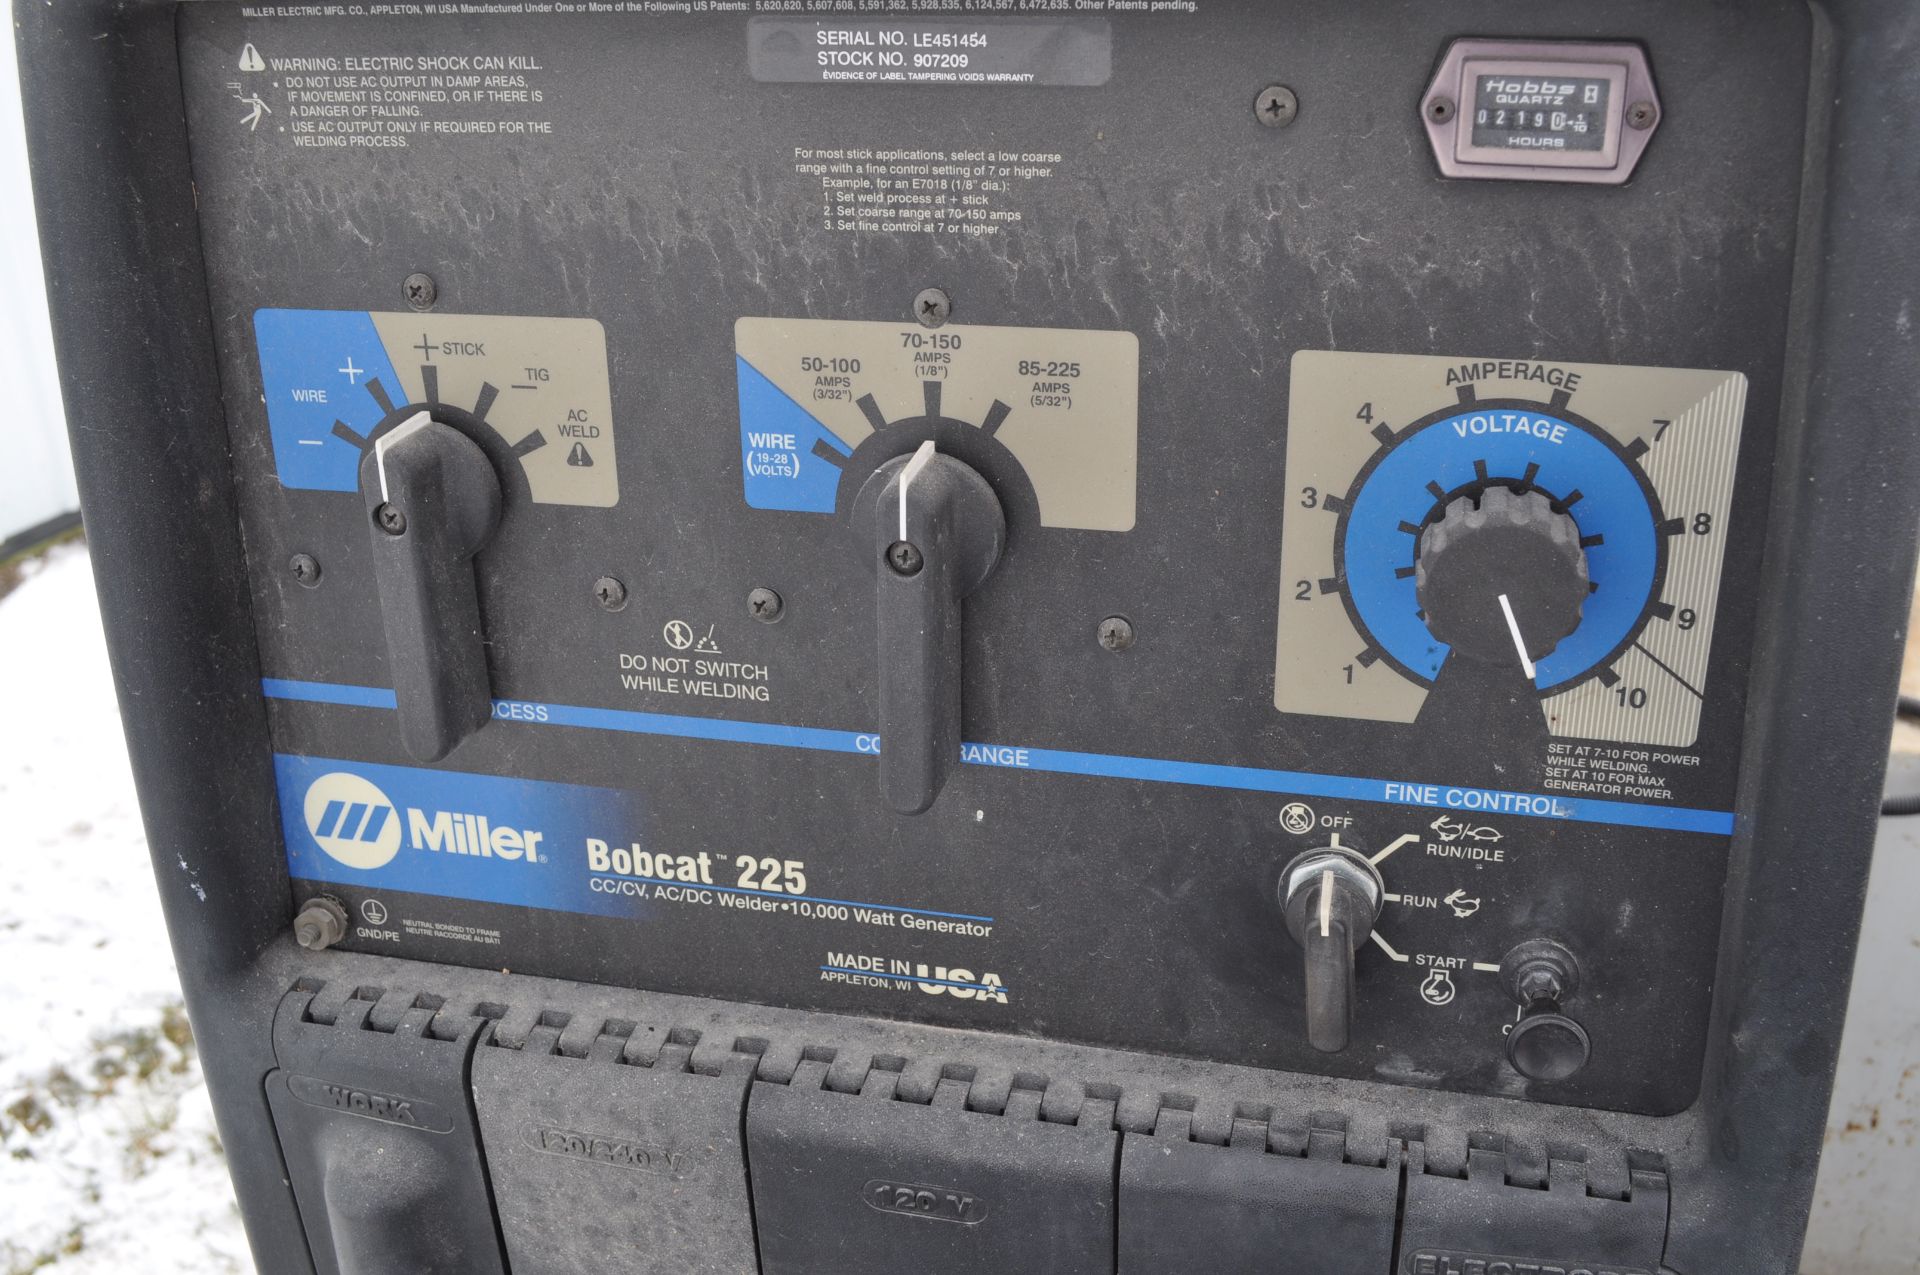 Miller Bobcat 225 welder/generator, 218 hrs, Kohler gas engine - Image 7 of 8